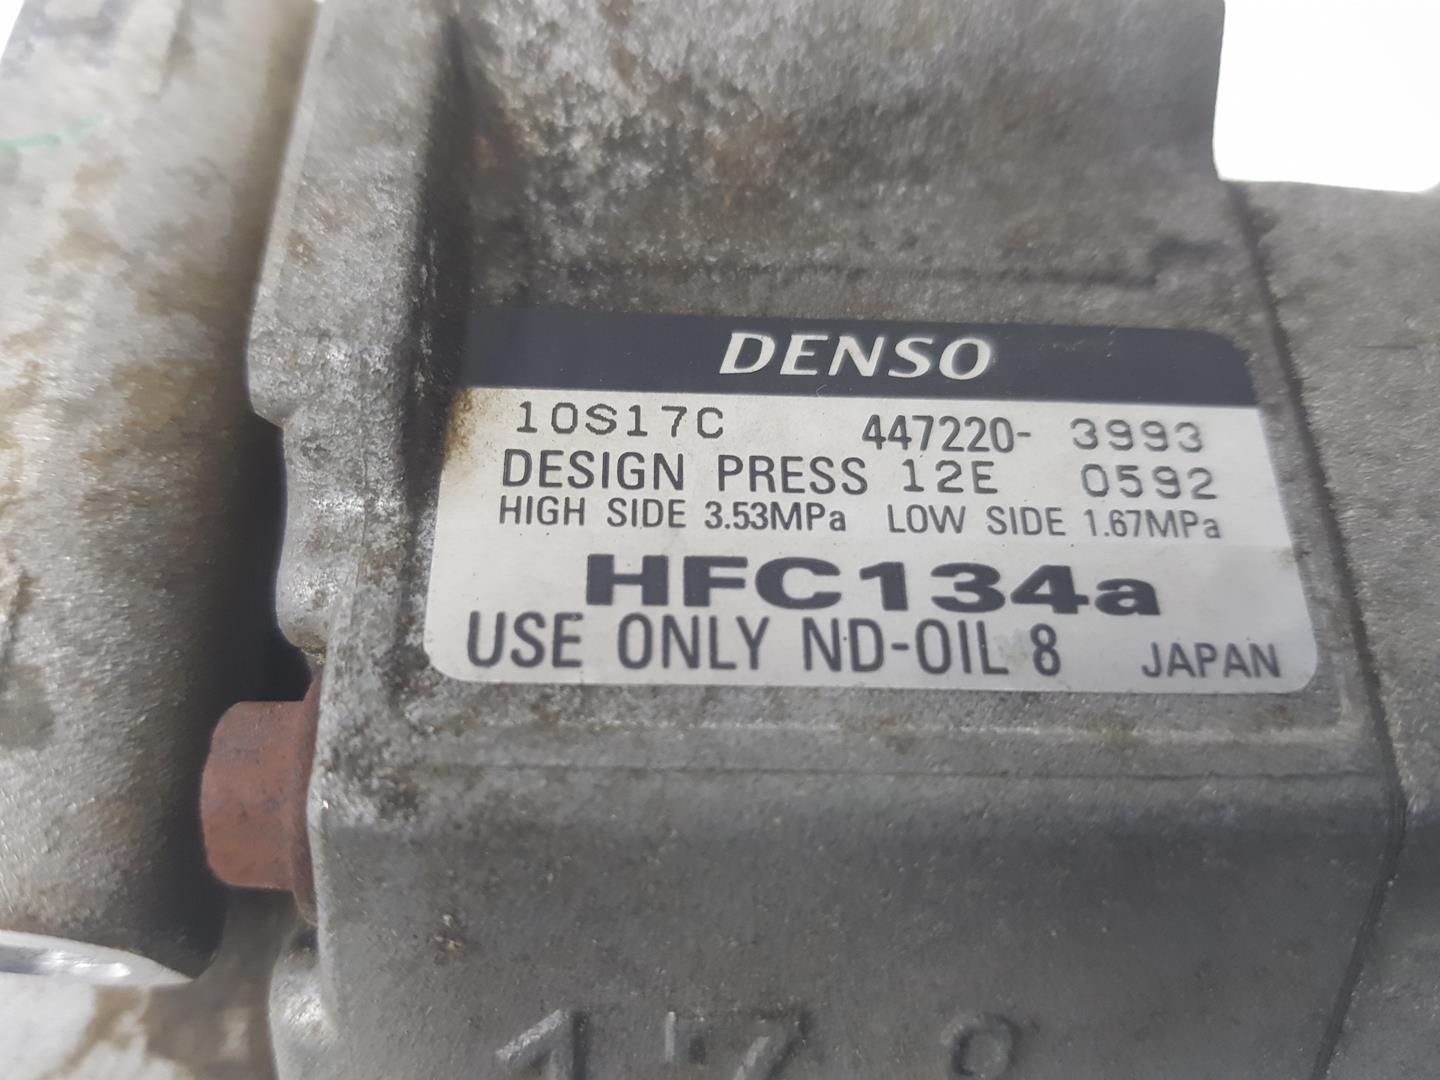 MITSUBISHI Pajero 3 generation (1999-2006) Air Condition Pump MR568289, MR568289, 4472203993 19748117